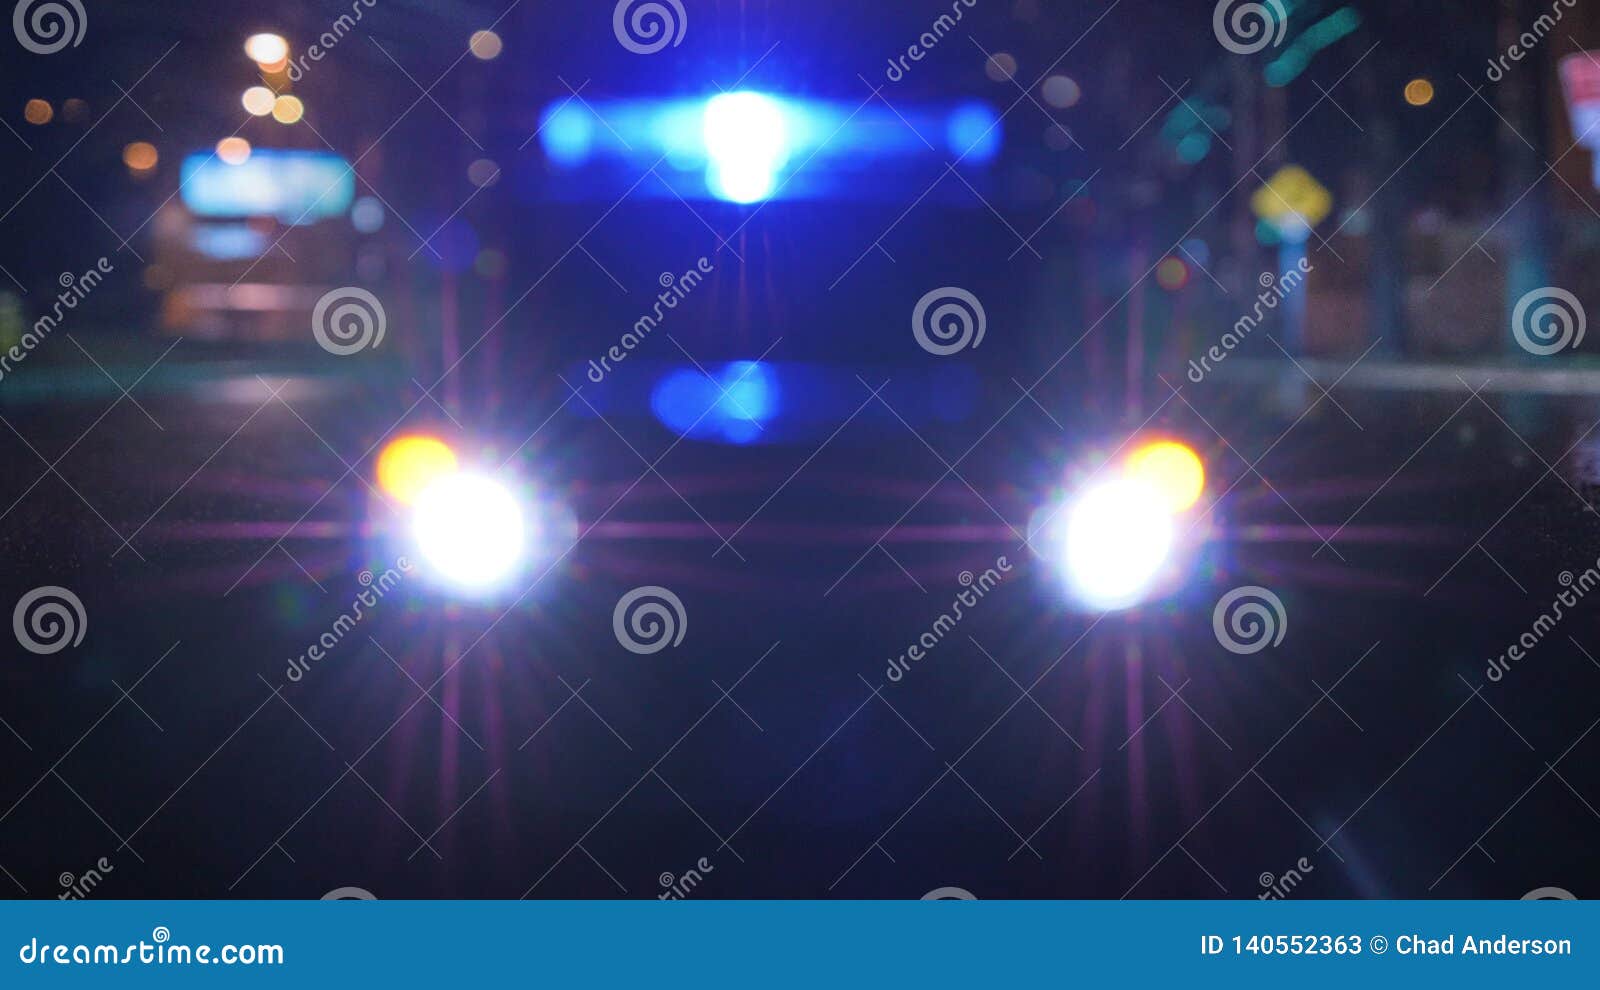 Banco de imagens : veículo, auto, Sedan, xerife, luz azul, Carro da polícia,  carro-patrulha, Veículo terrestre, Automóvel, Exterior automotivo, carro  compacto, Carro da família, Polícia carros americanos 3405x2270 - - 1039695  - Imagens Gratuitas - PxHere